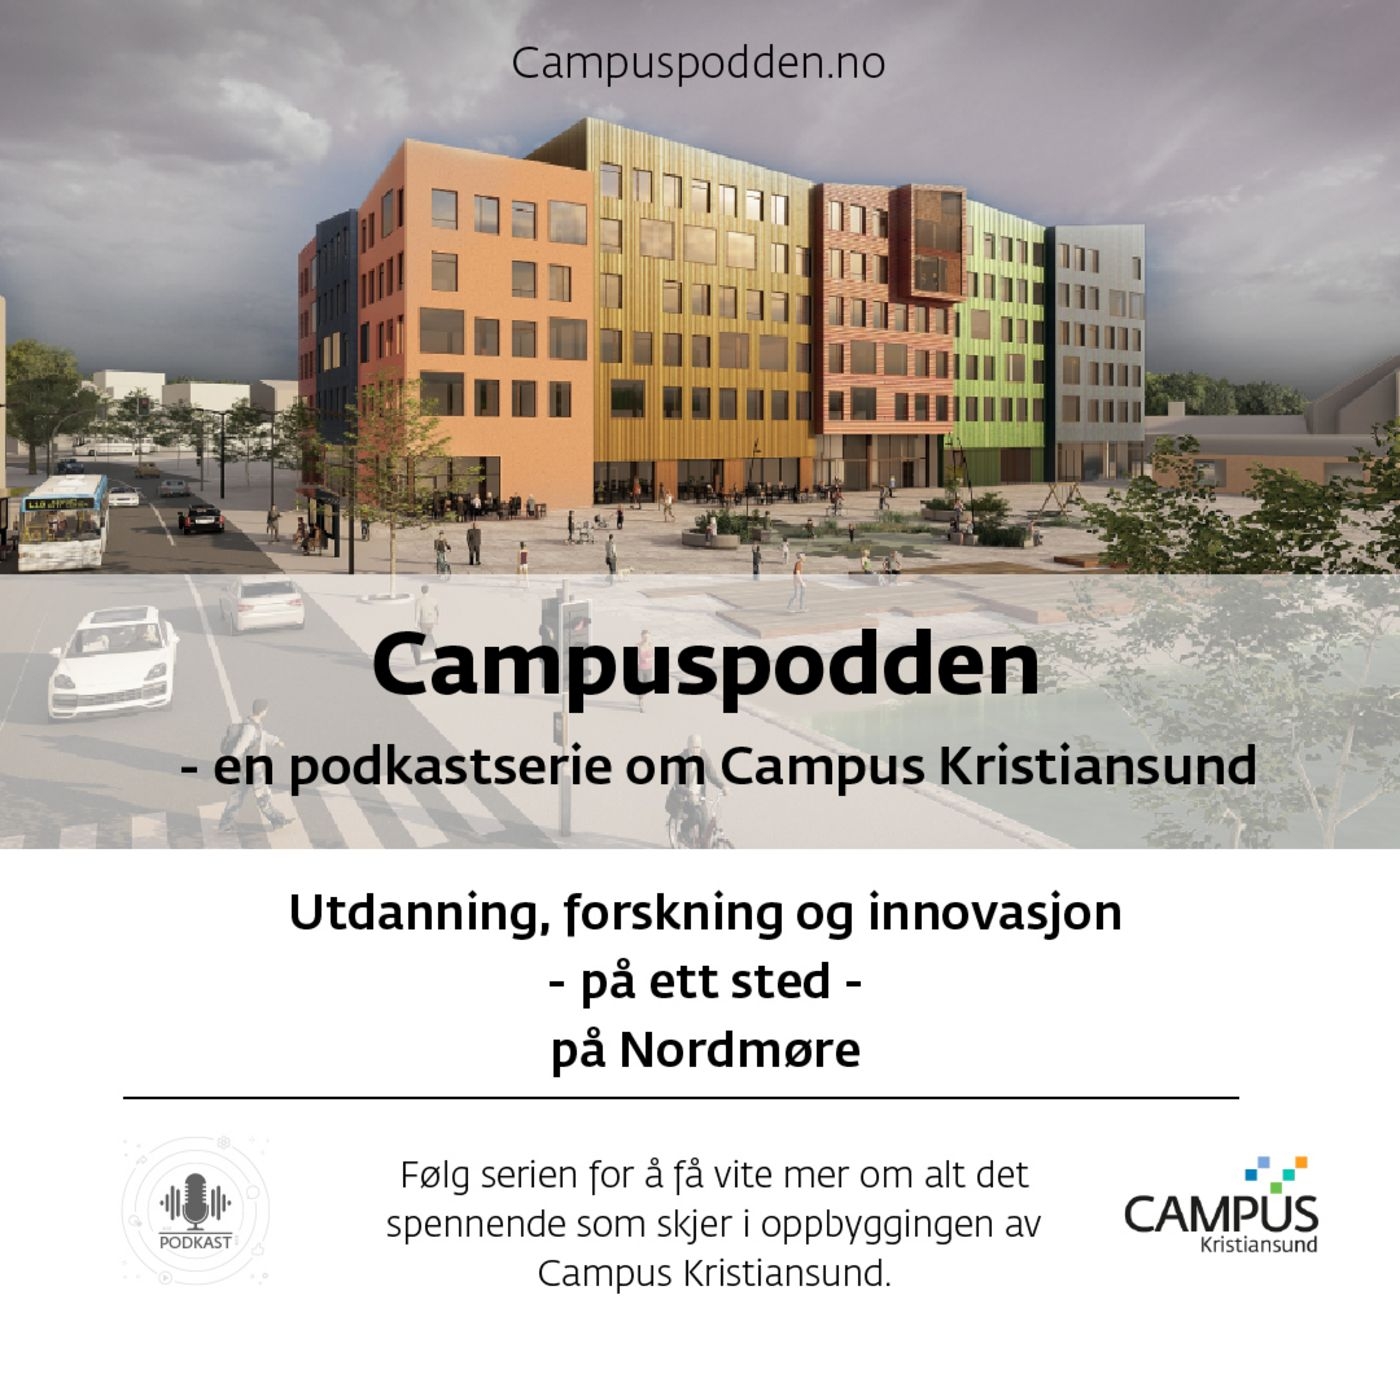 Campuspodden